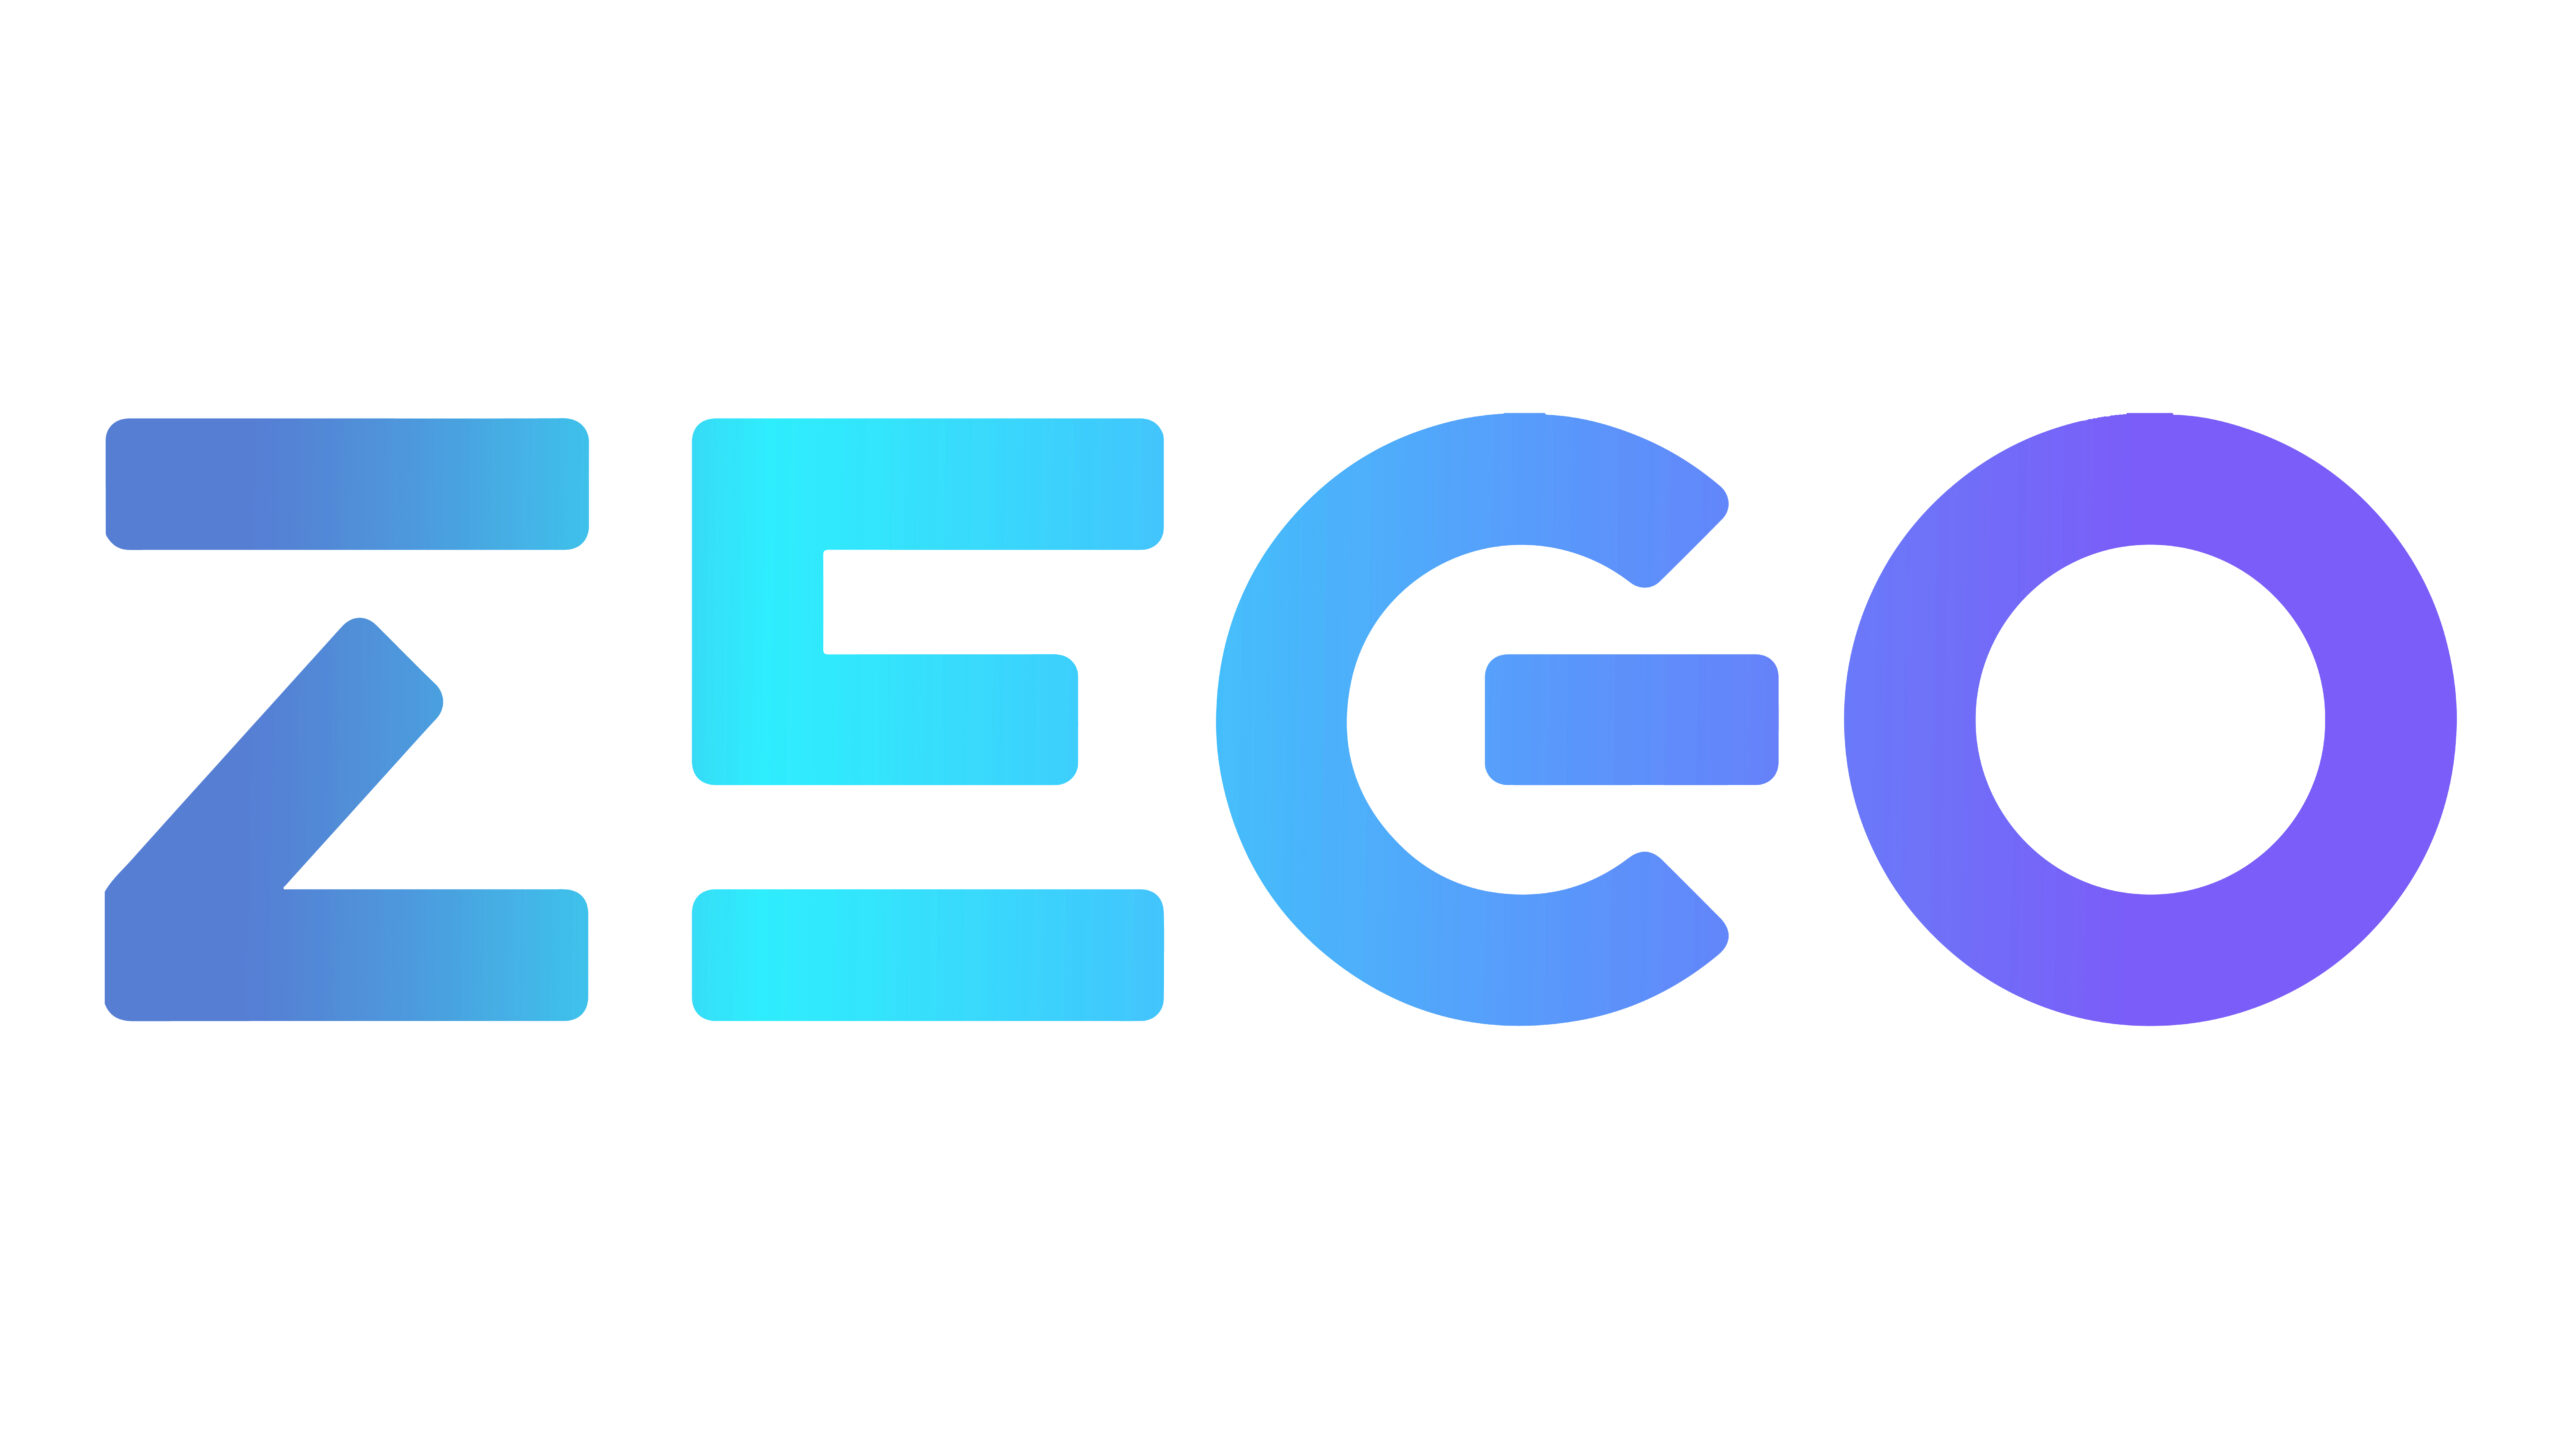 Страховая компания Zego объявило о сотрудничестве с мобильным стартапом Brite